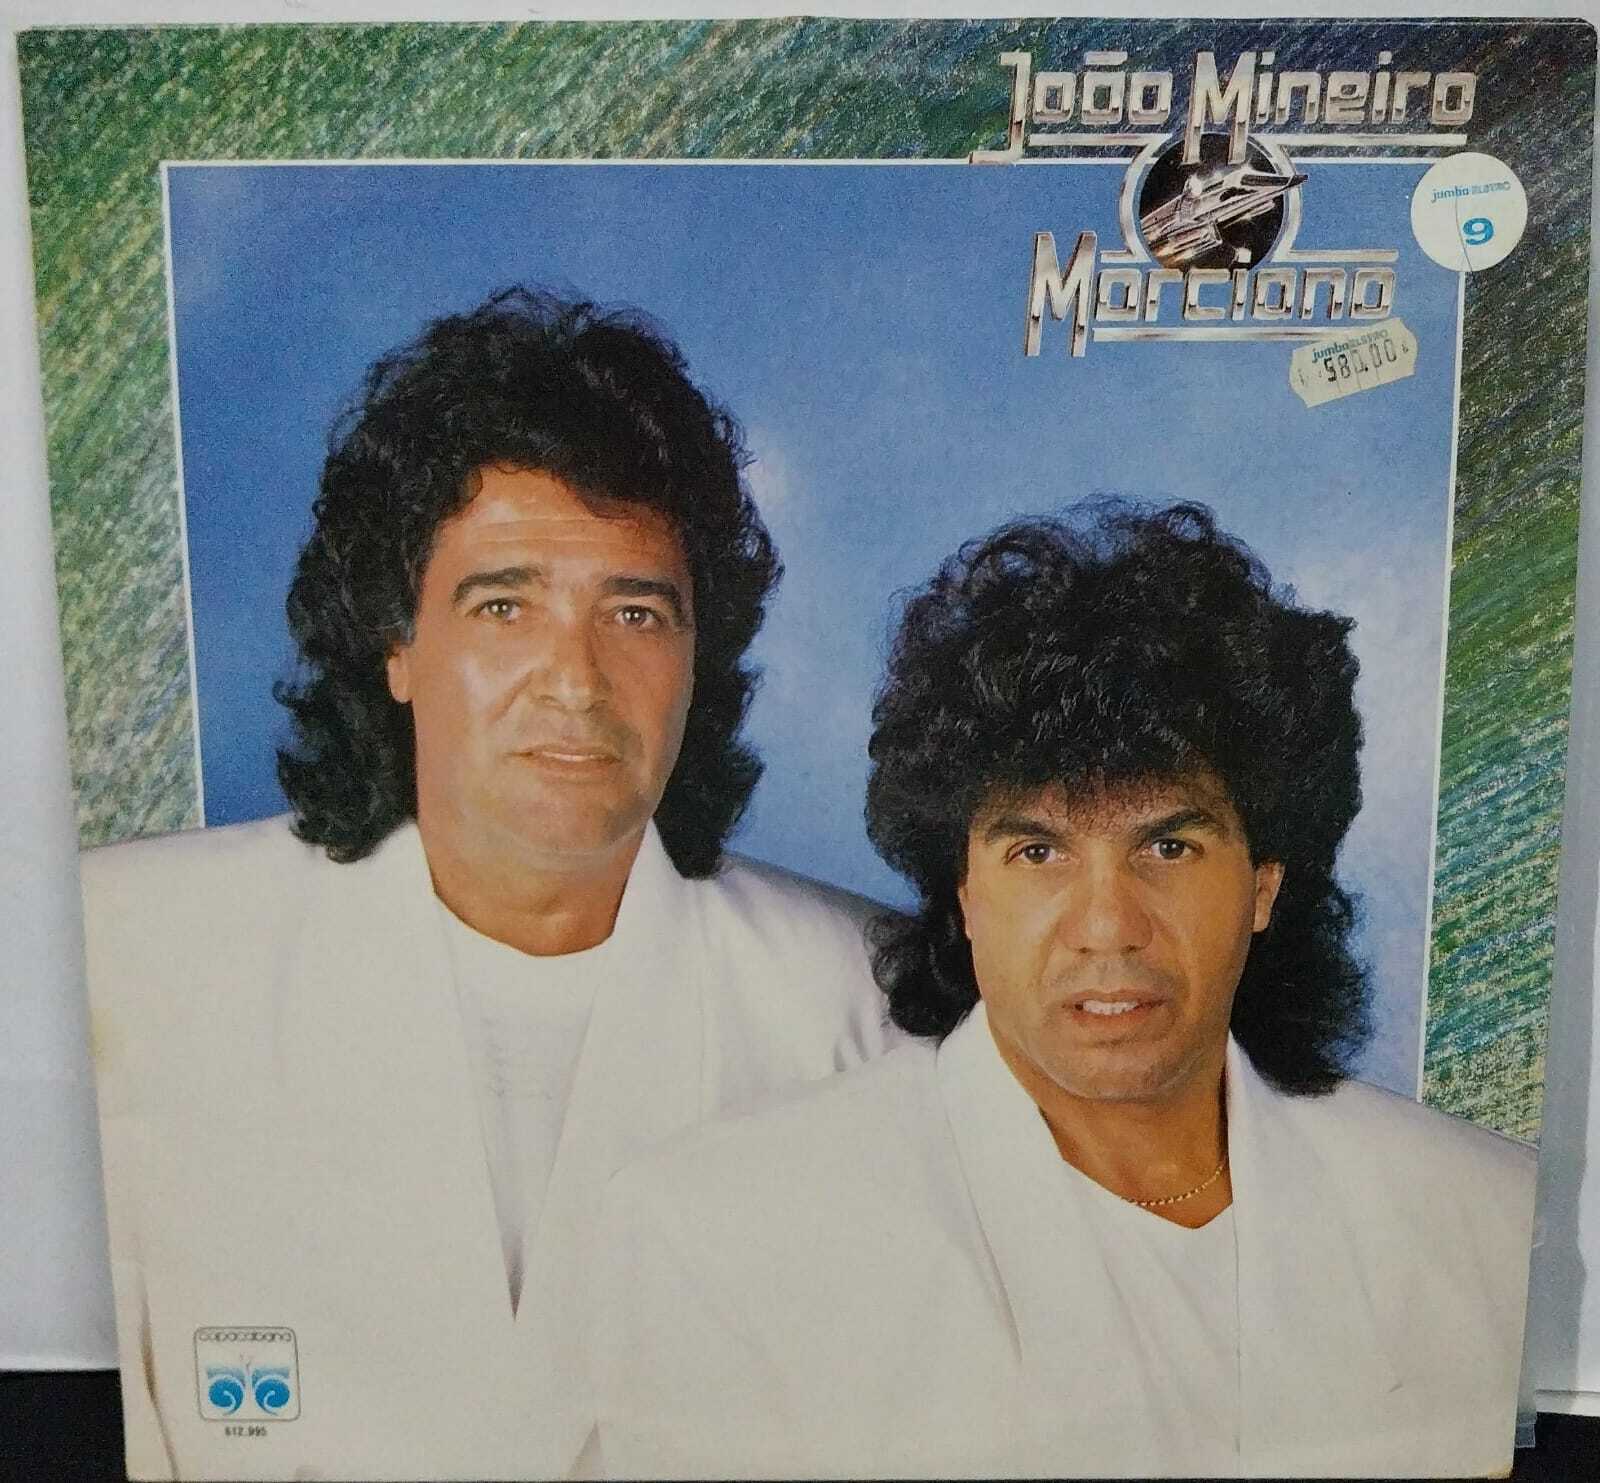 Vinil - João Mineiro e Marciano - 1989